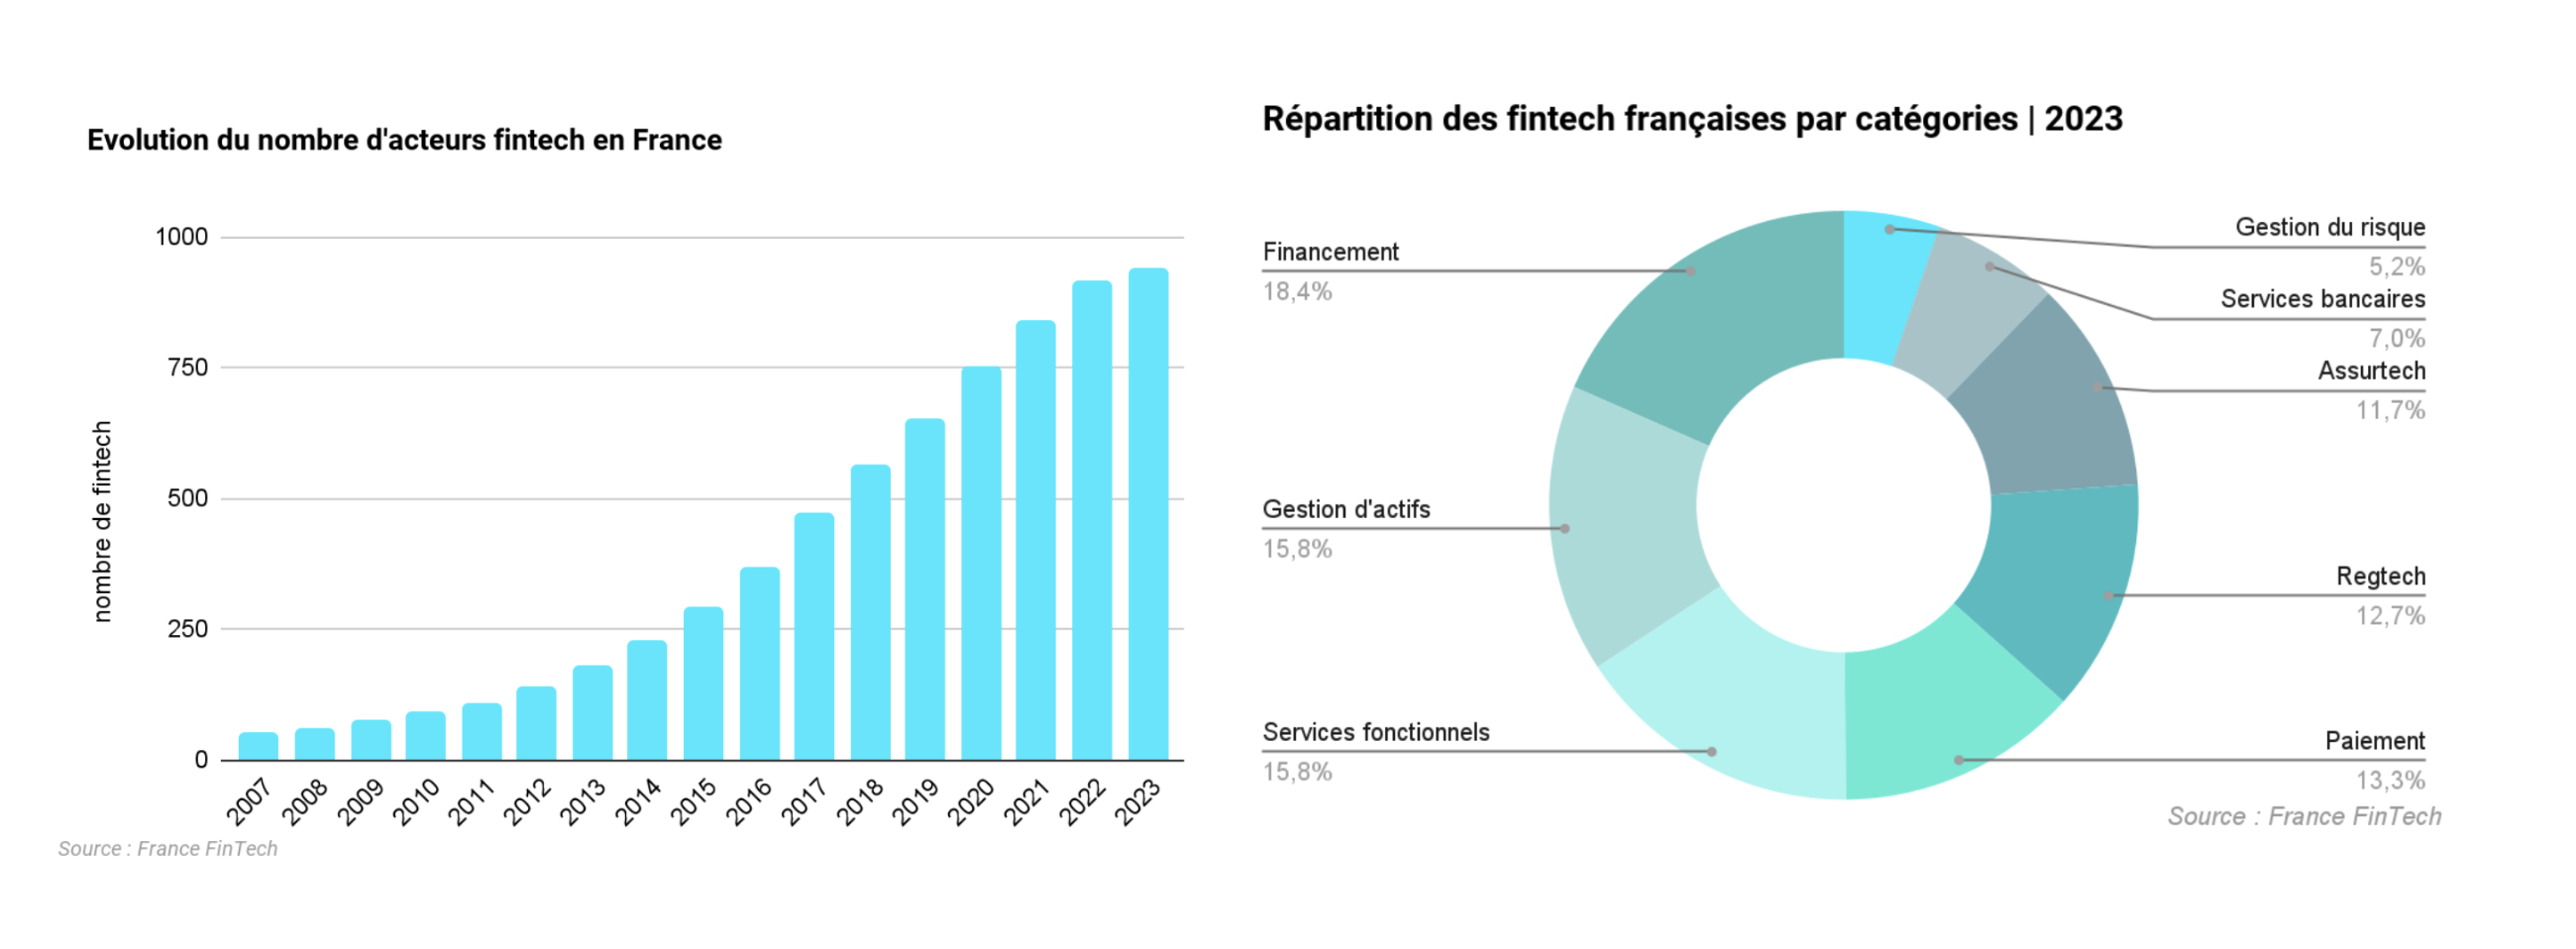 France Fintech et BPI France publient le panorama 2023 des fintech françaises  